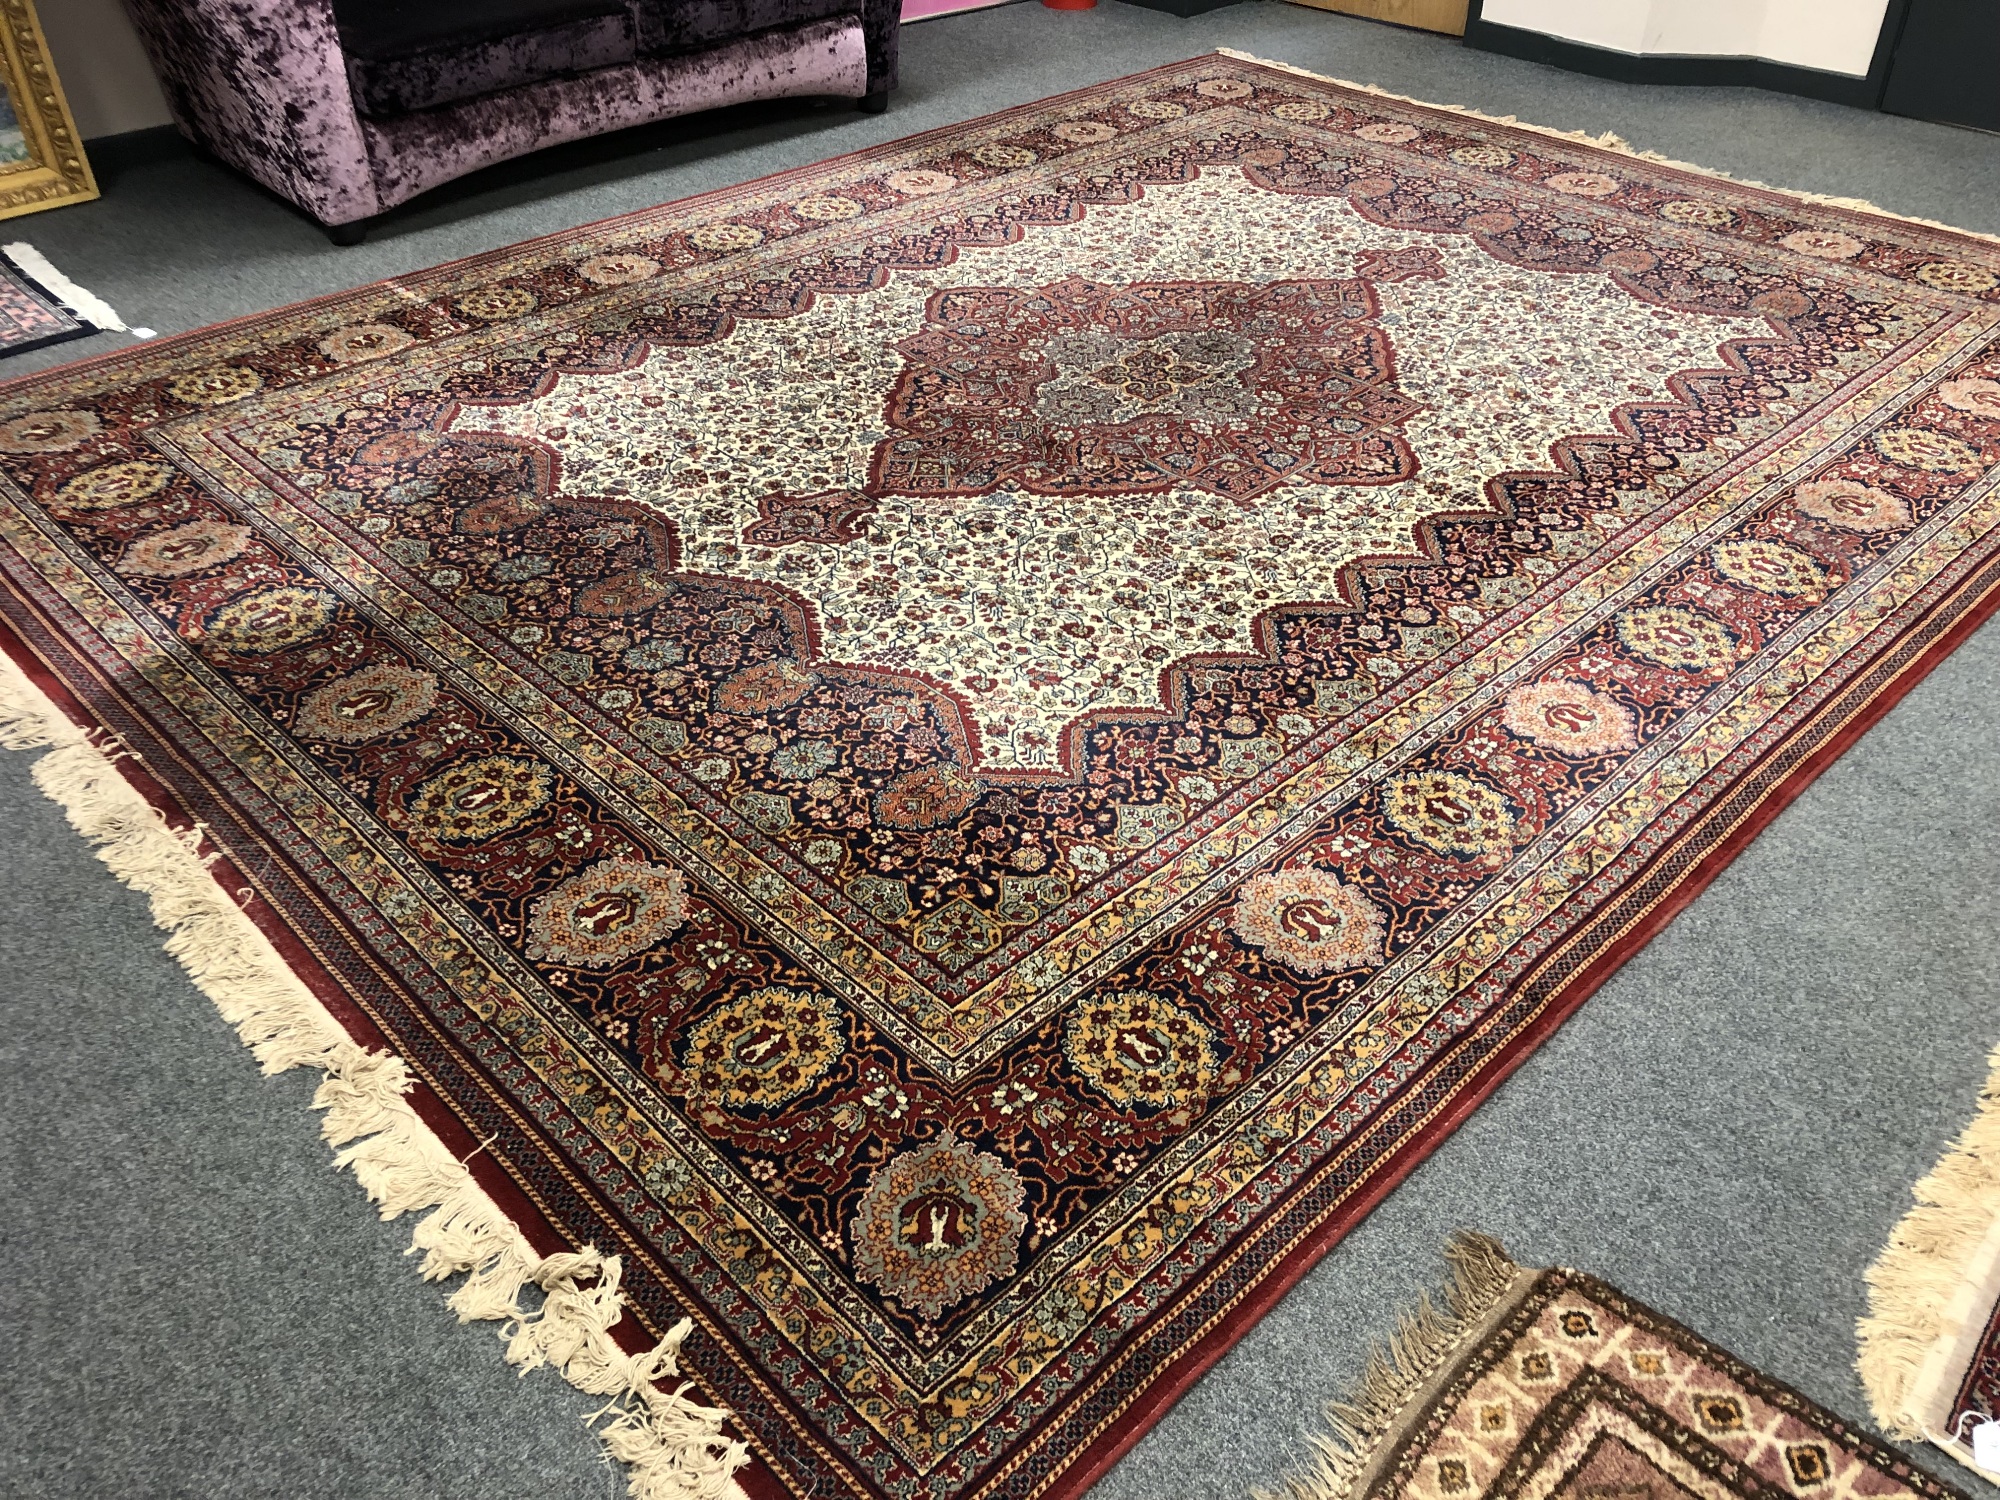 A machine-made Tabriz design carpet, - Image 2 of 3